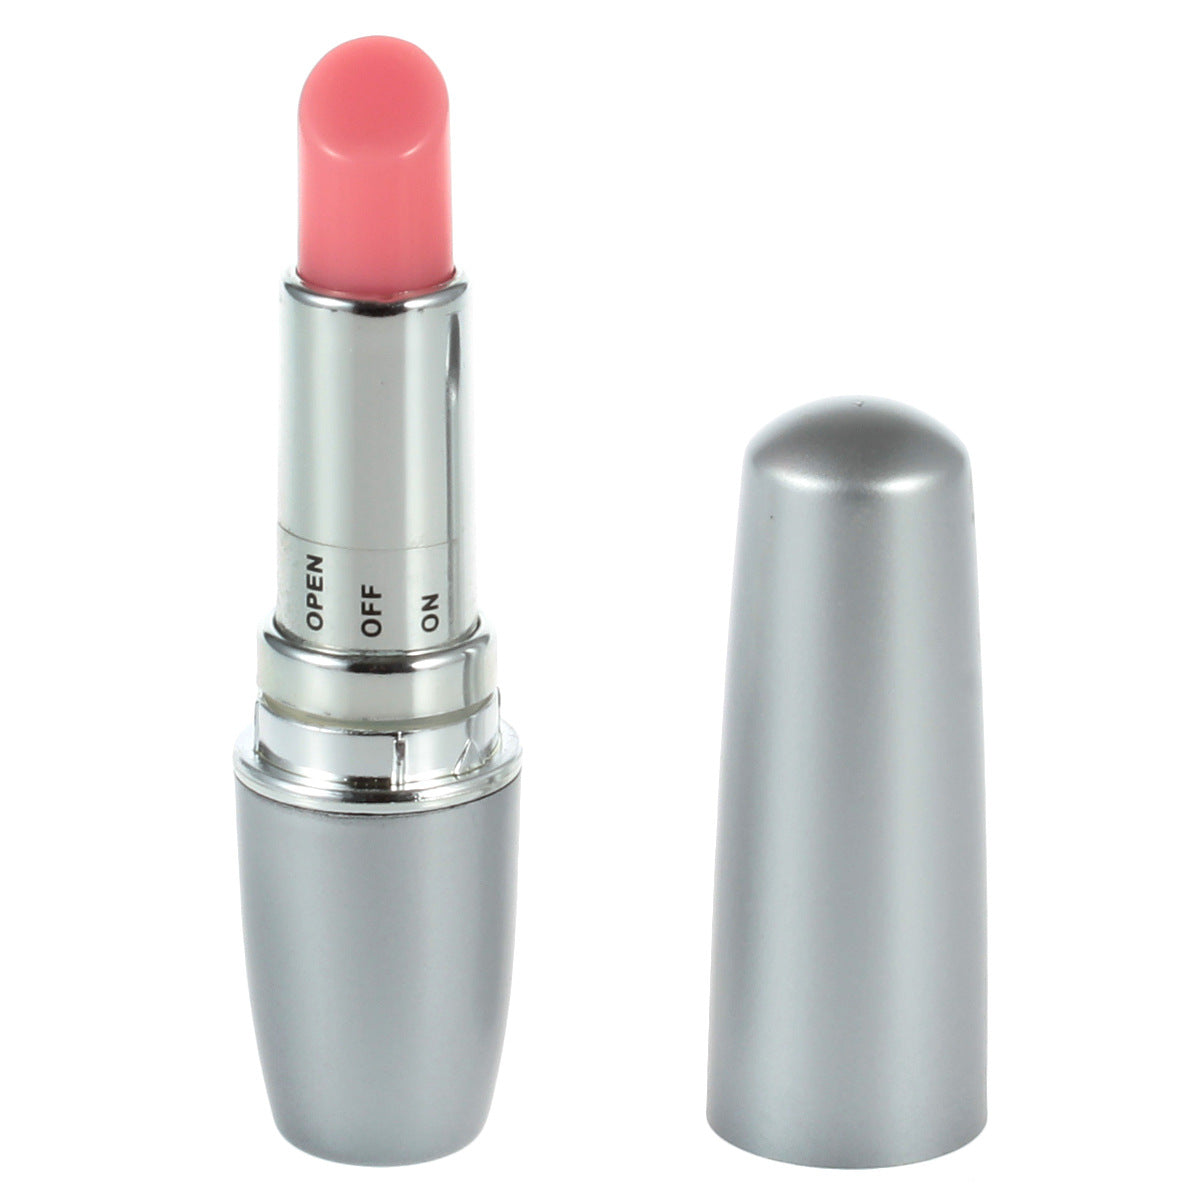 Lipstick Dildo Mini Electric Bullet Vibrator Vaginal Massager G Spot C